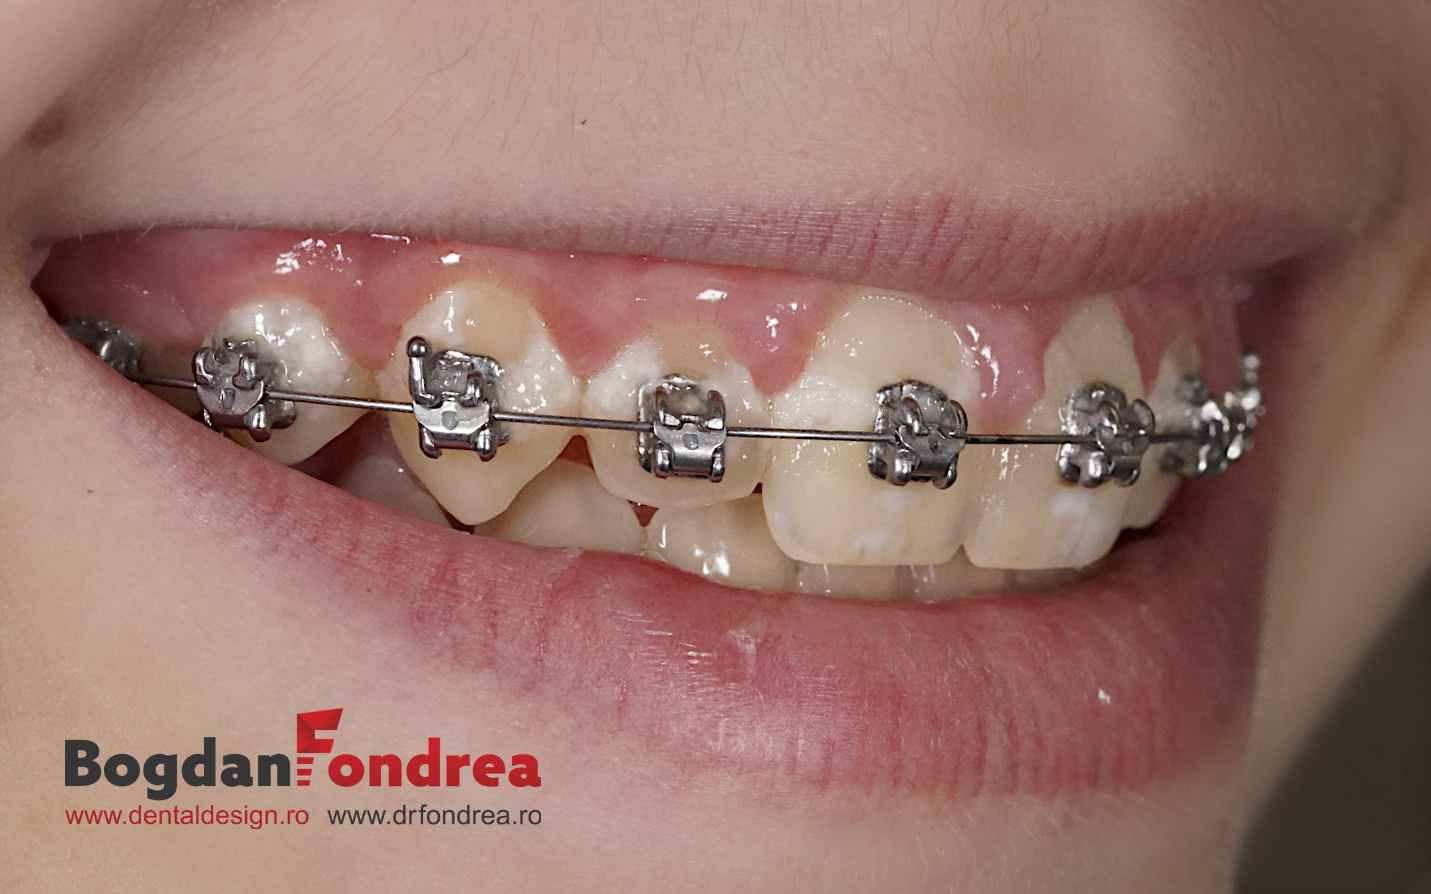 toxicity sort Trampling Igienizarea si intretinerea dintilor pe durata tratamentului ortodontic -  Dr. Bogdan Fondrea